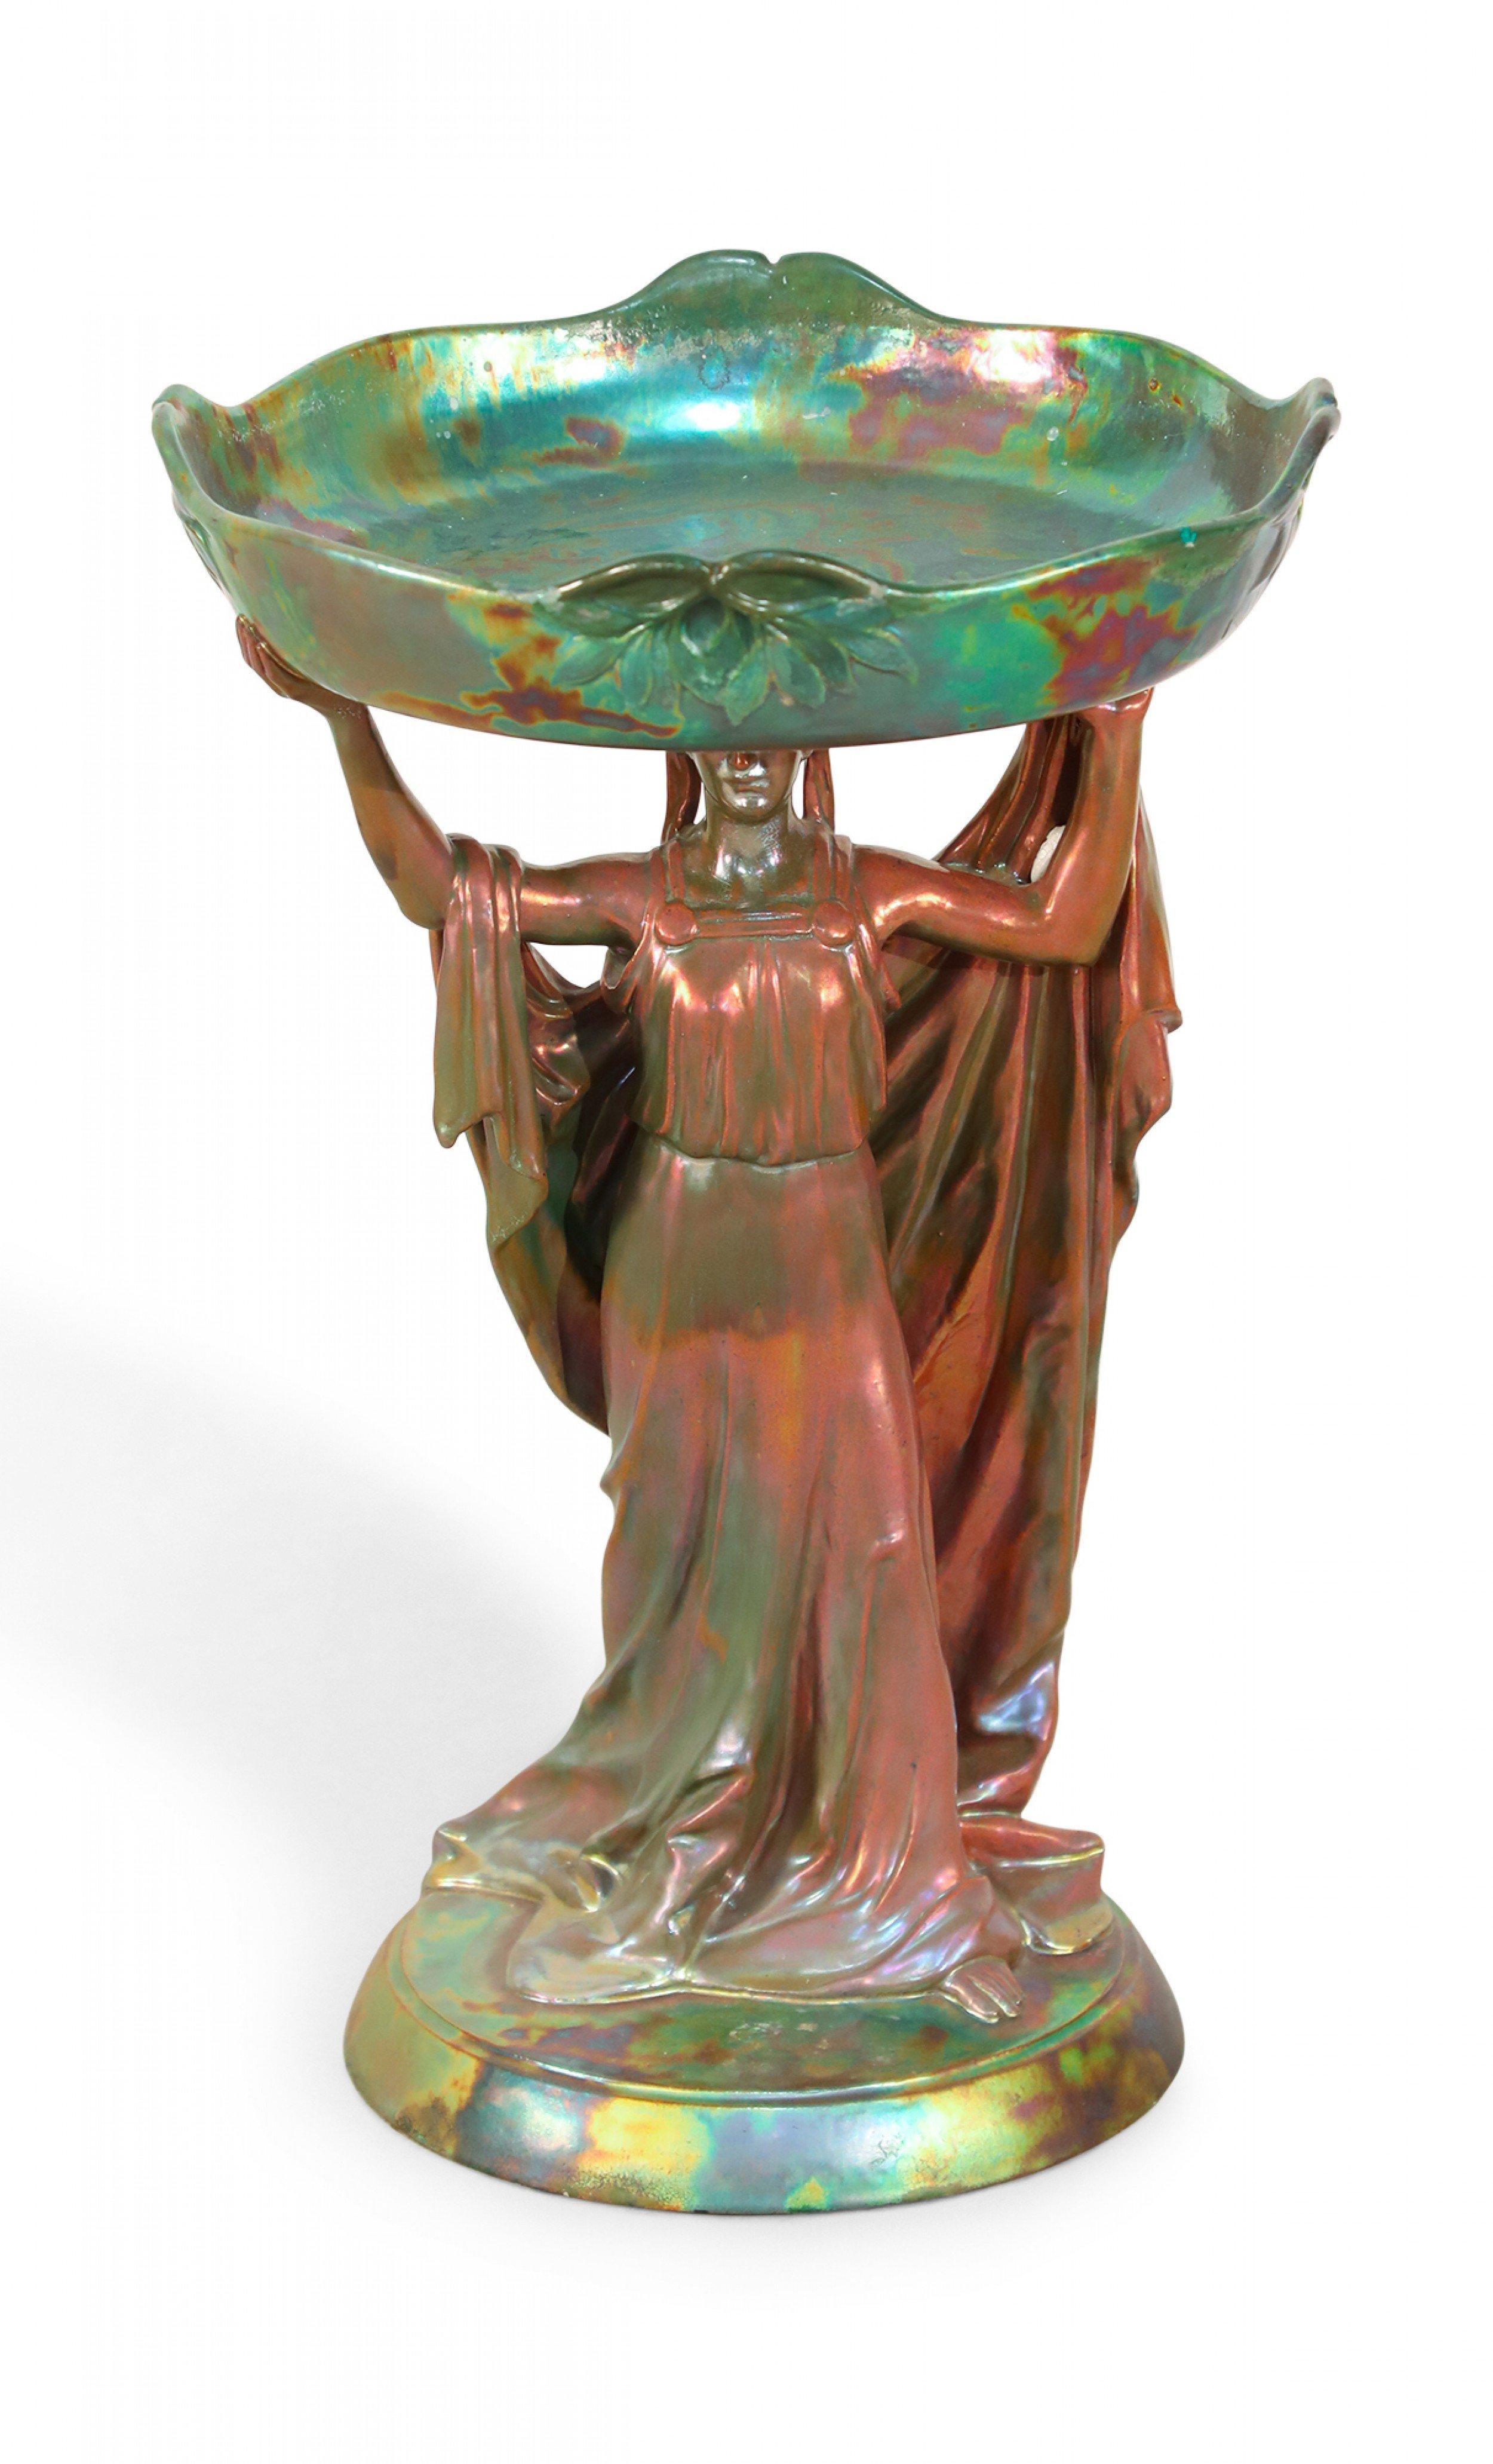 Centre de table Art Nouveau en porcelaine Zsolnay vert irisé avec une figure féminine tenant un plateau rond au-dessus de sa tête.
